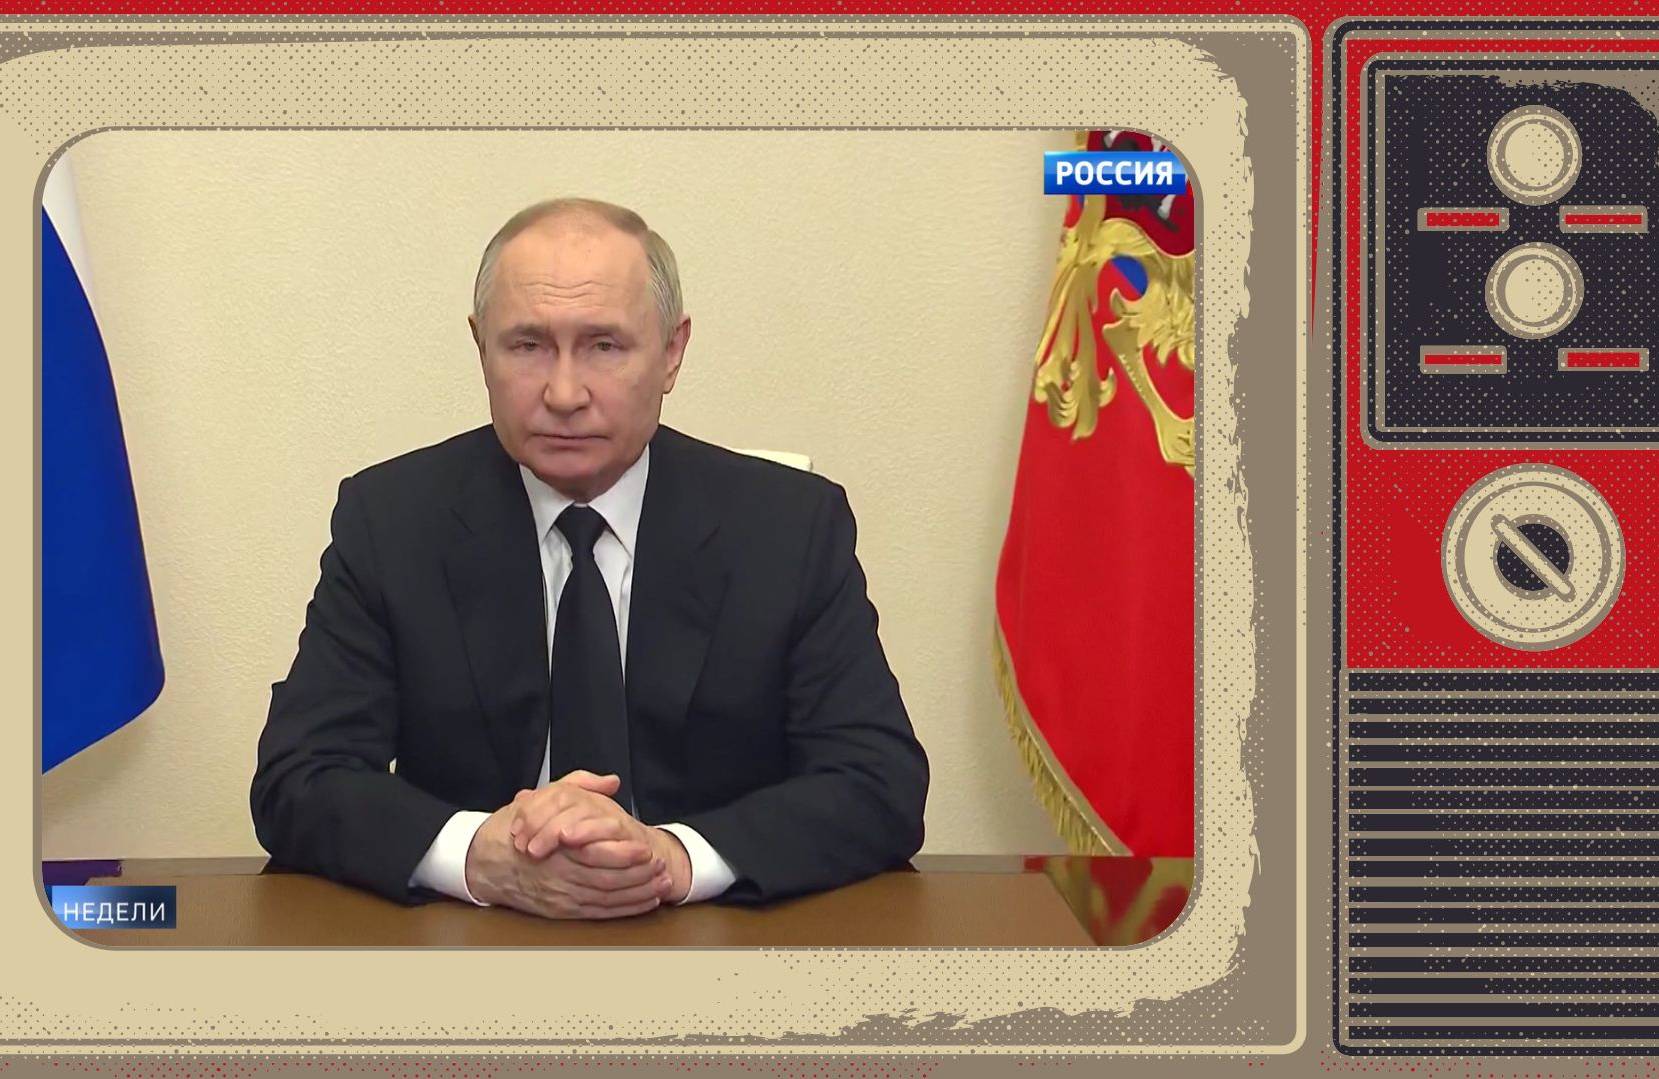 Grafika: Putin wygłasza orędzie, Zdjęcie wstawione w ramke starego telewizora